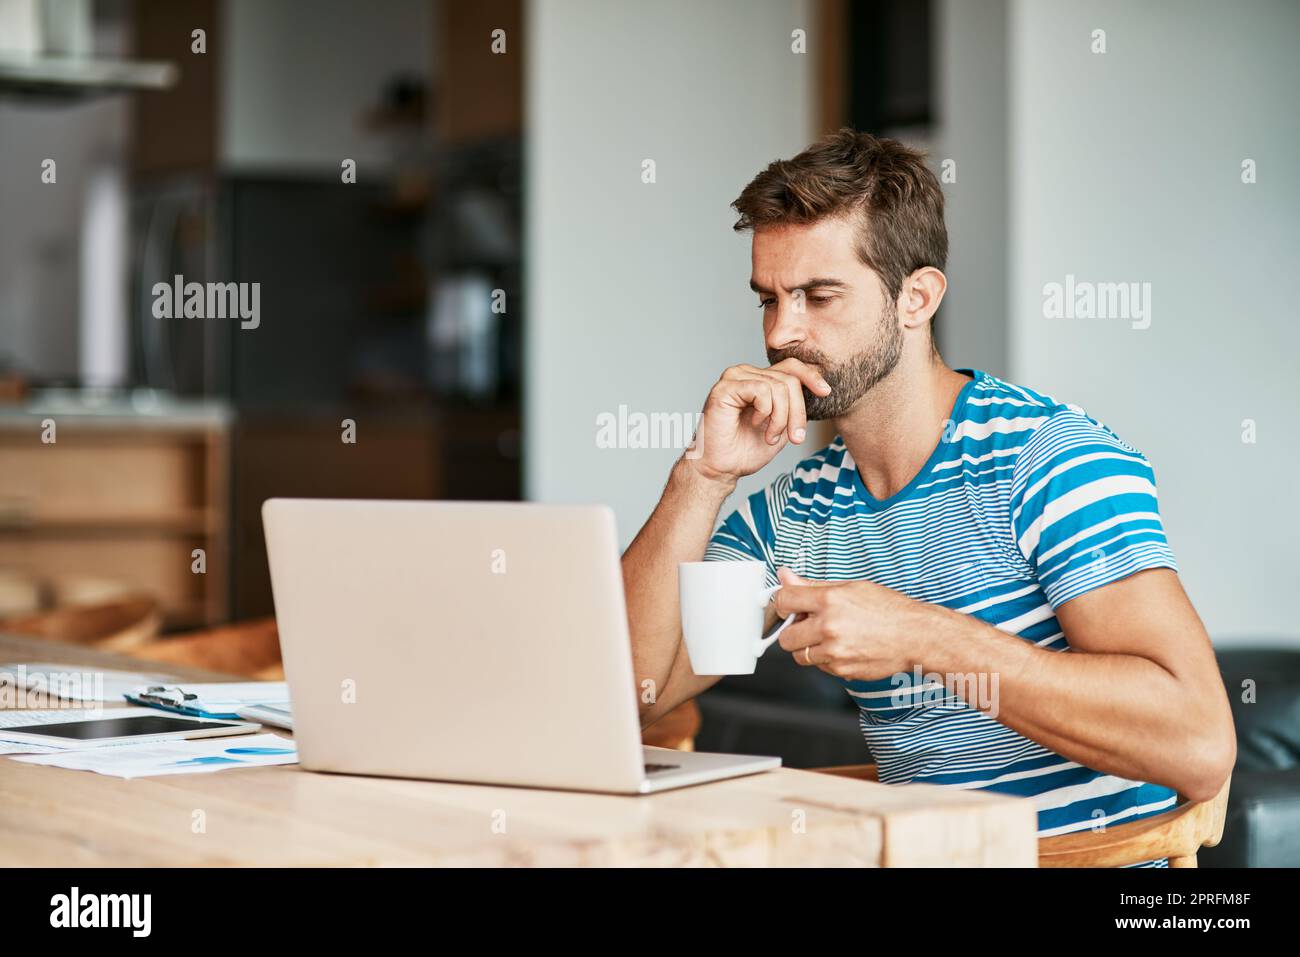 HES hat viel darüber nachzudenken. Ein hübscher junger Unternehmer, der nachdenklich aussieht, während er von seinem Heimbüro aus arbeitet. Stockfoto